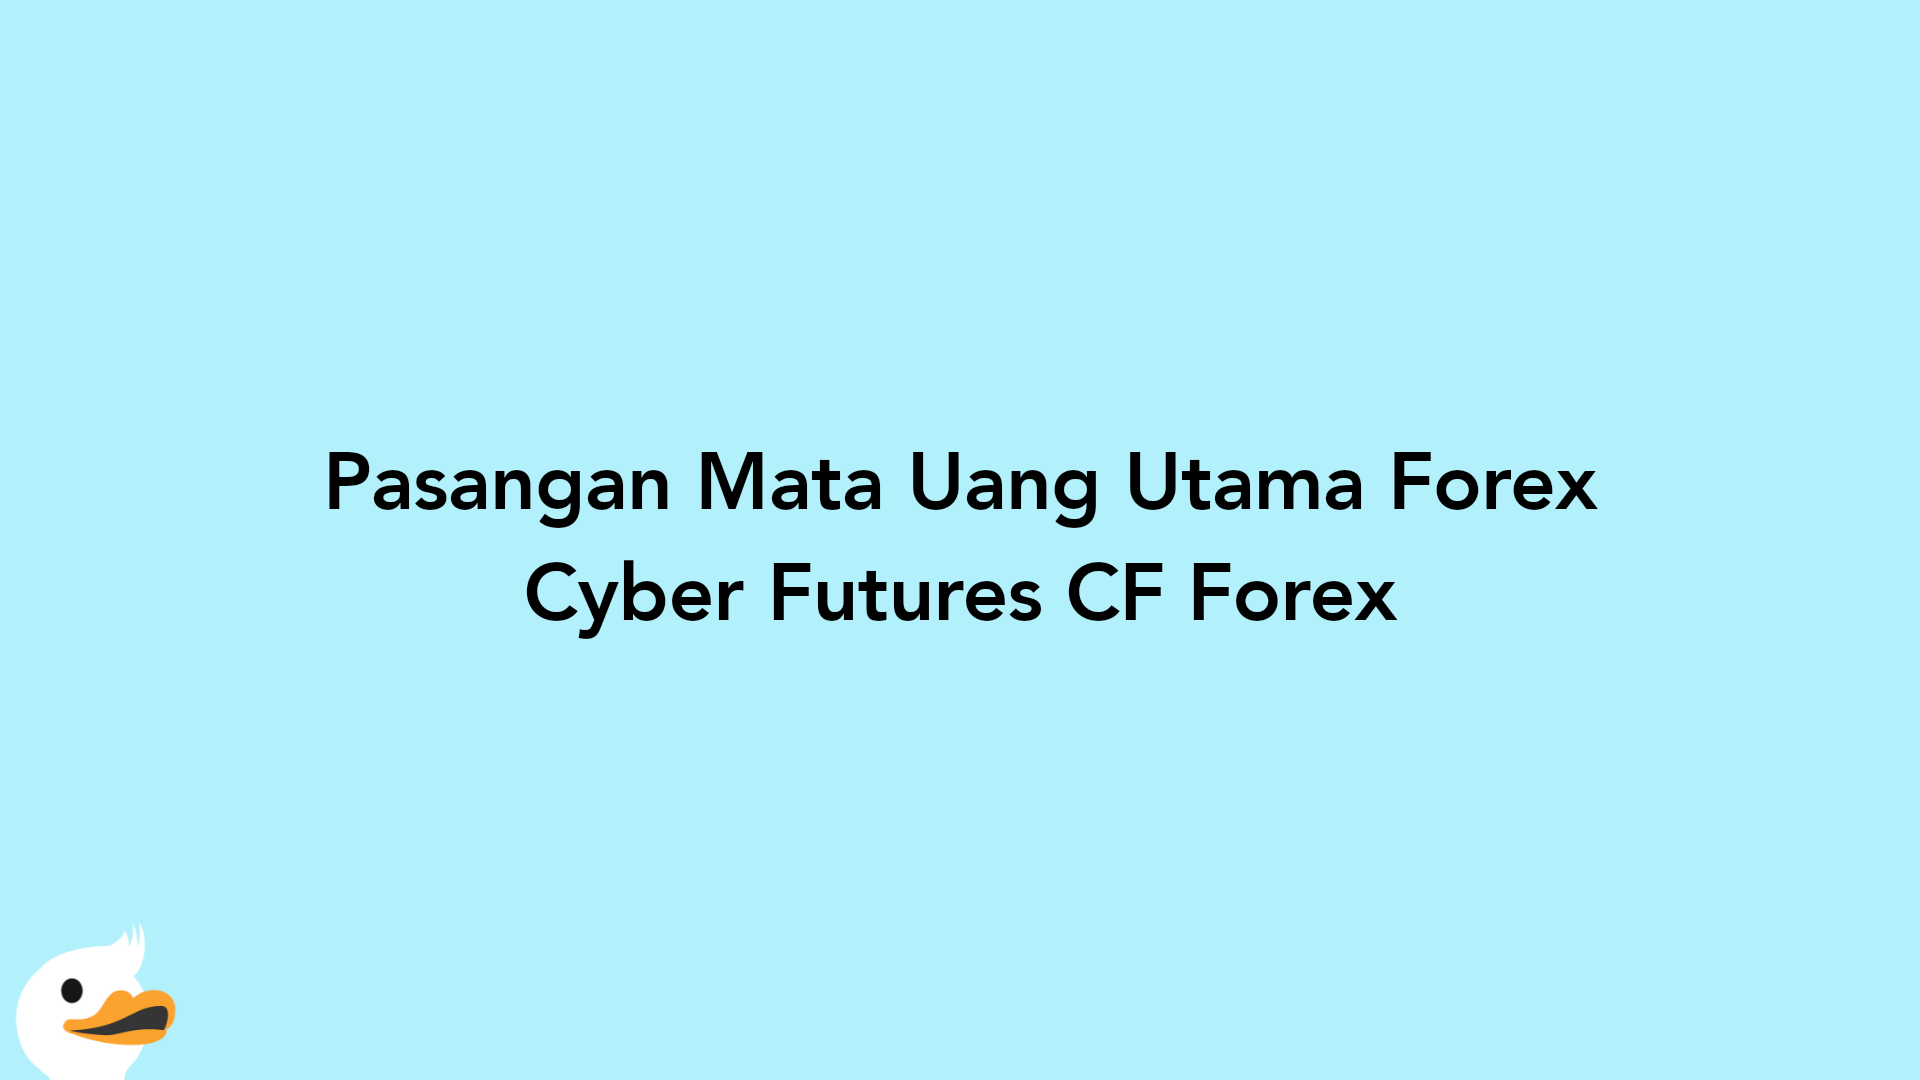 Pasangan Mata Uang Utama Forex Cyber Futures CF Forex